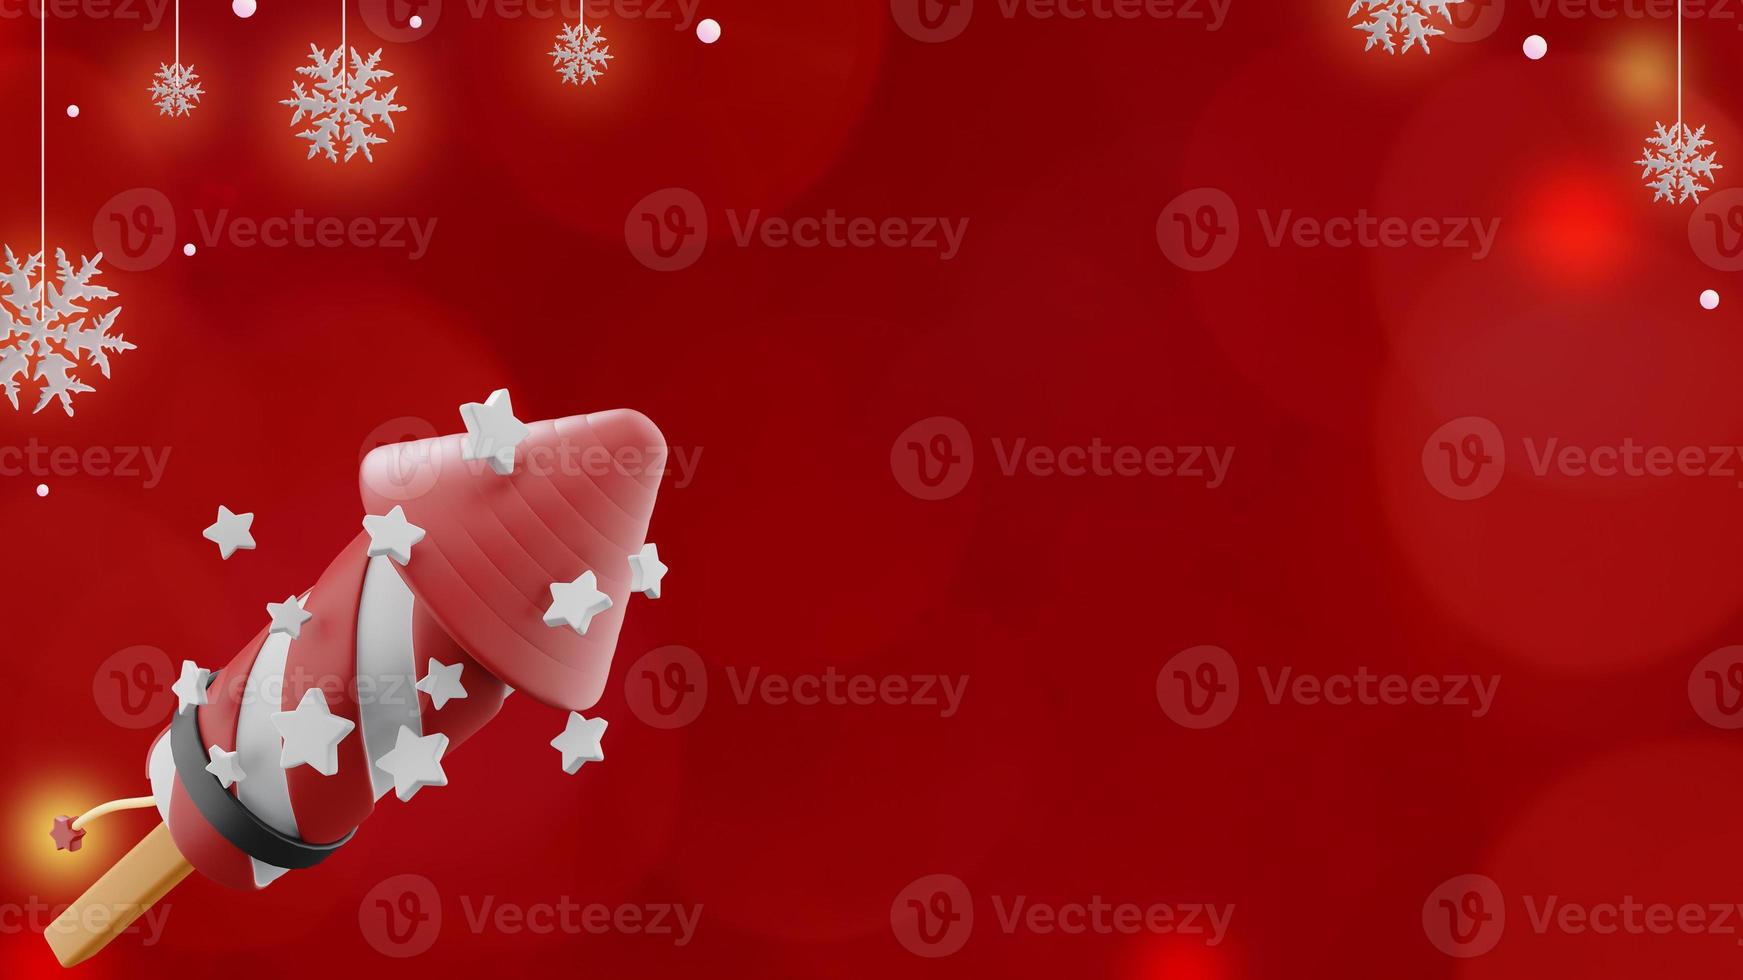 banner de natal em fundo vermelho com foguete de fogos de artifício e flocos de neve no espaço da cópia foto